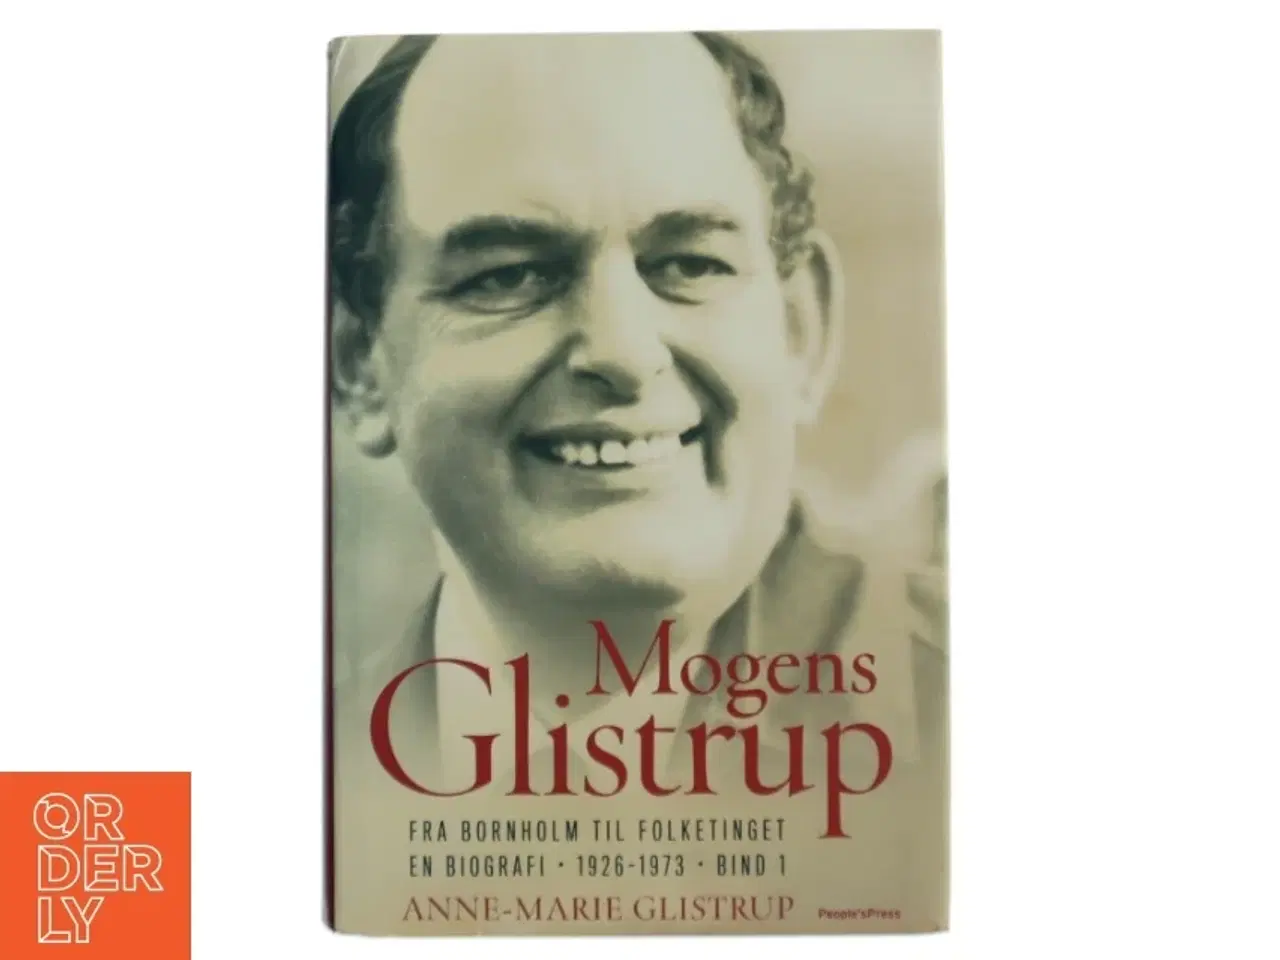 Billede 1 - Mogens Glistrup. Bind 1, Fra Bornholm til Folketinget : en biografi - 1926-1973 af Anne-Marie Glistrup (Bog)